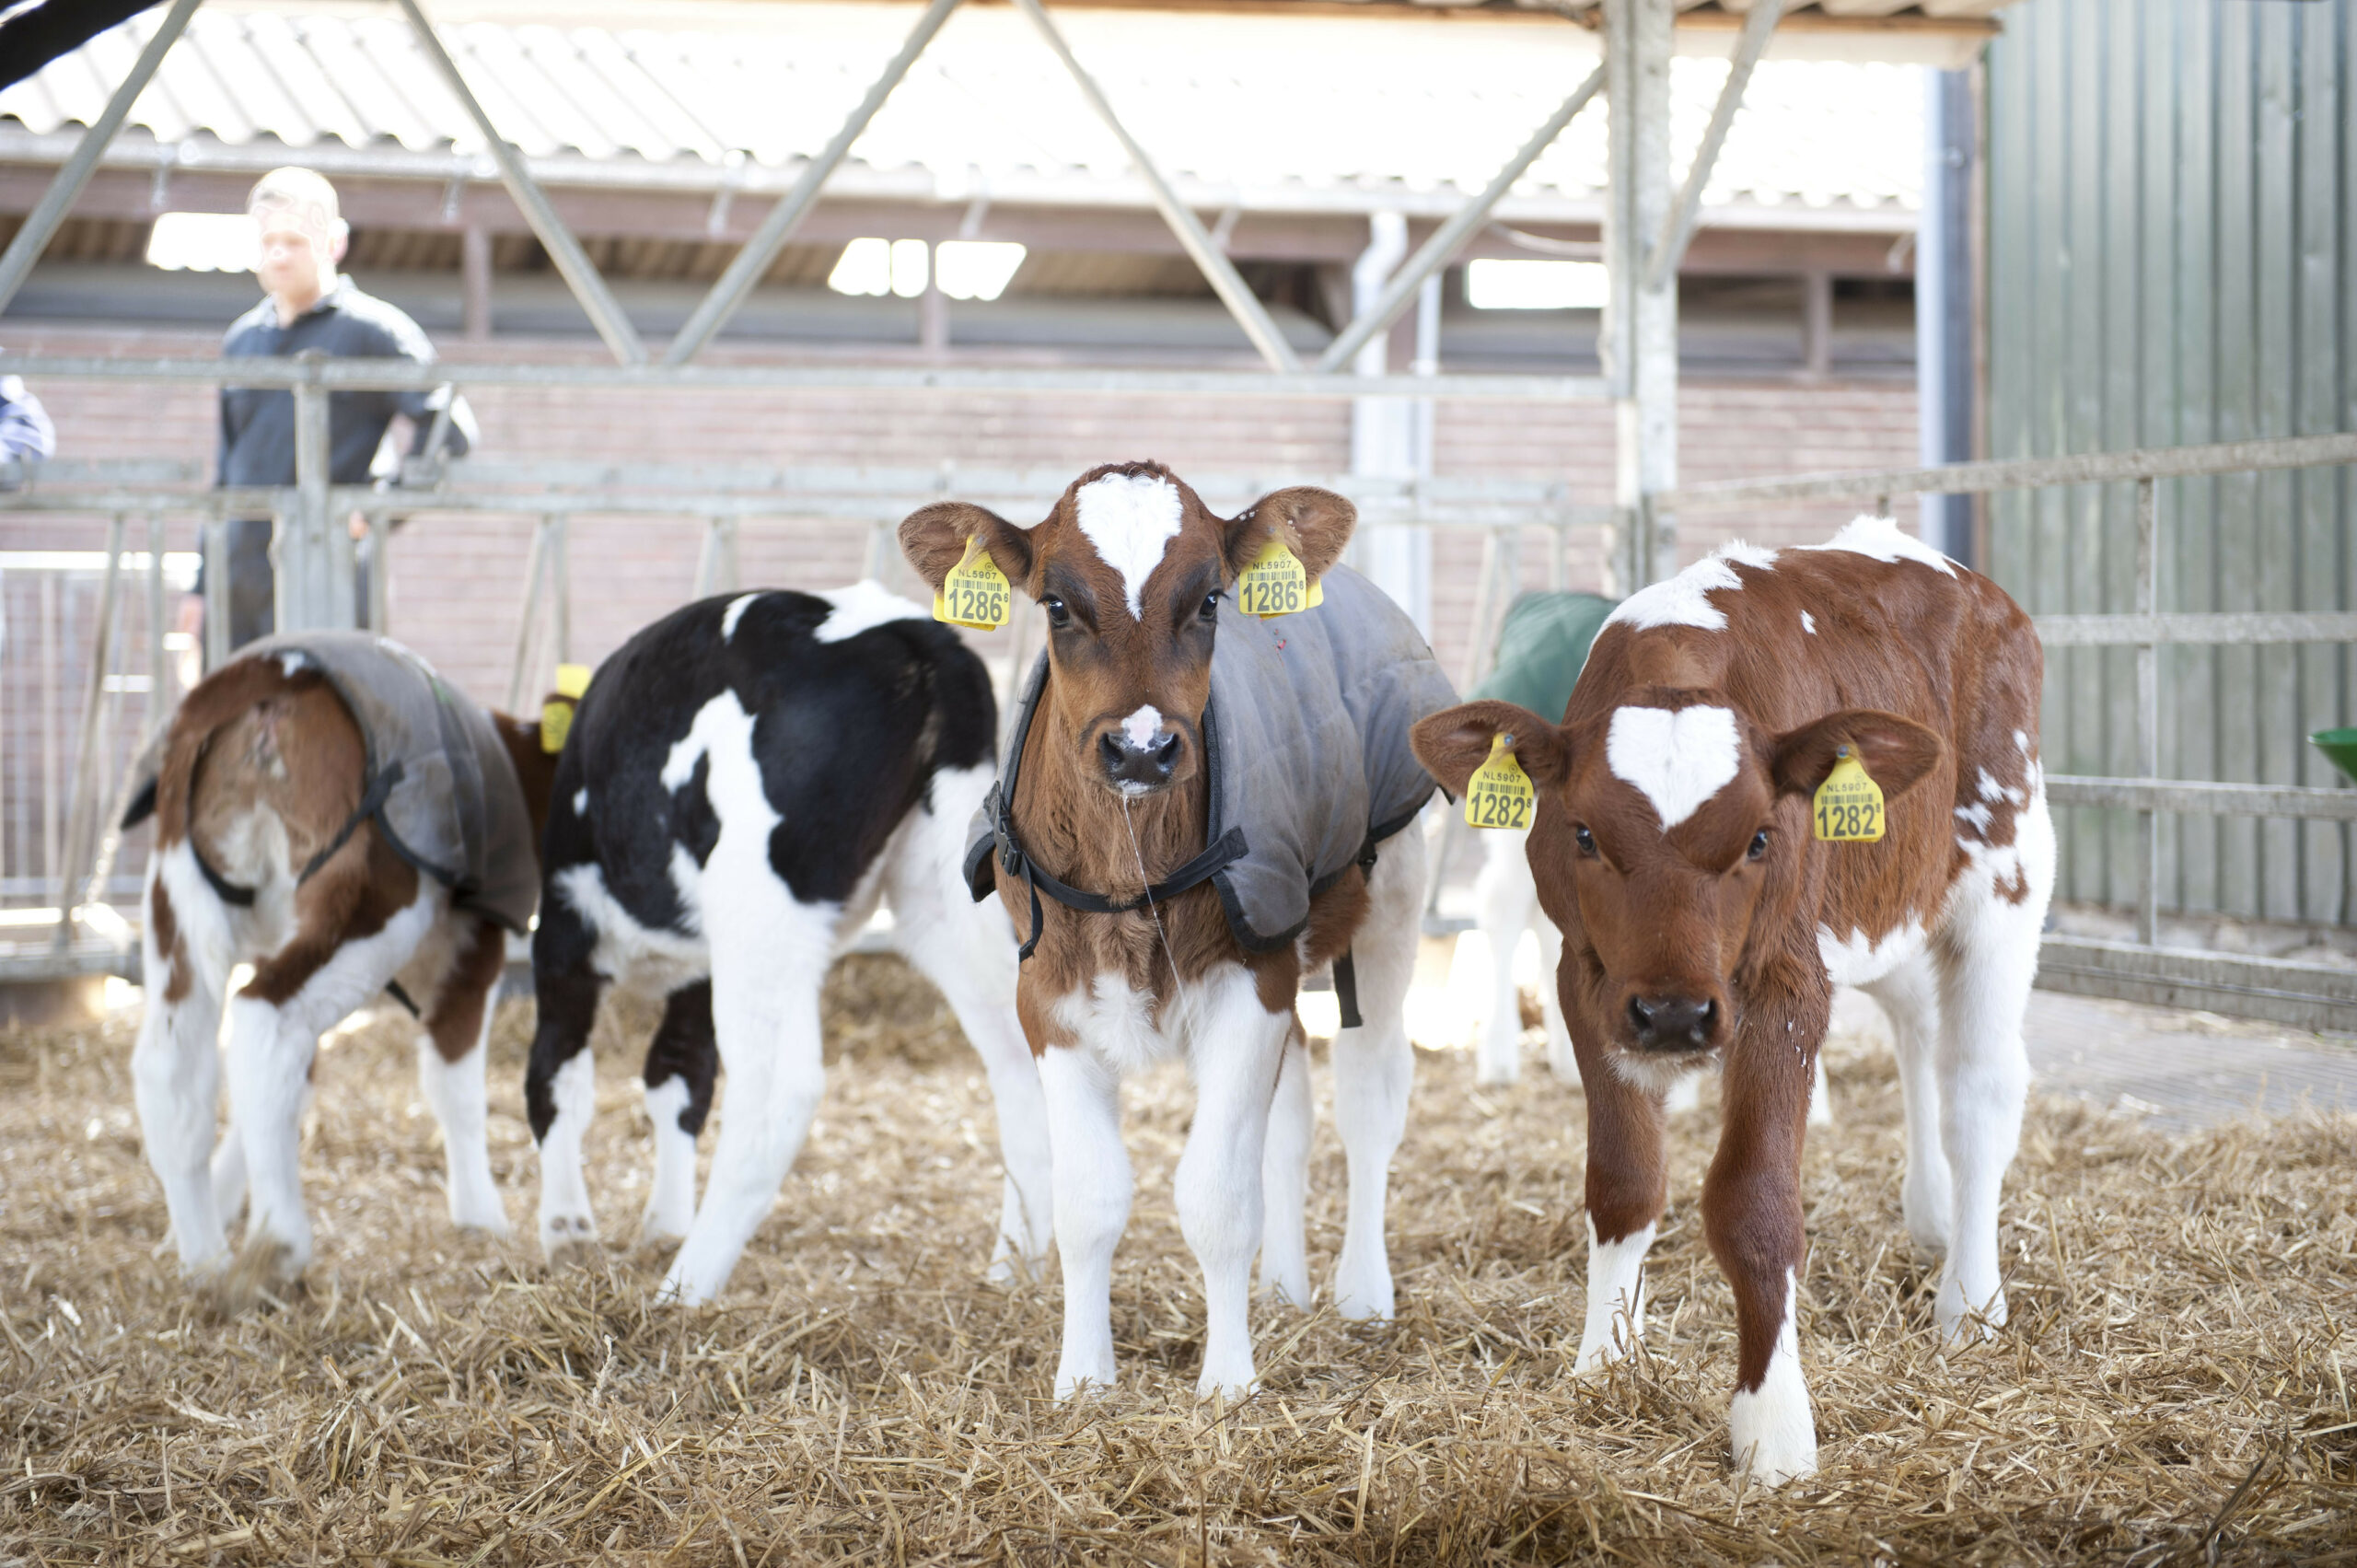 Op veel manieren hebben veehouders opbrengsten buiten het leveren van melk. Maar een deel is gerelateerd aan de koeien, zoals omzet en aanwas. Ook een tweede tak levert inkomsten.